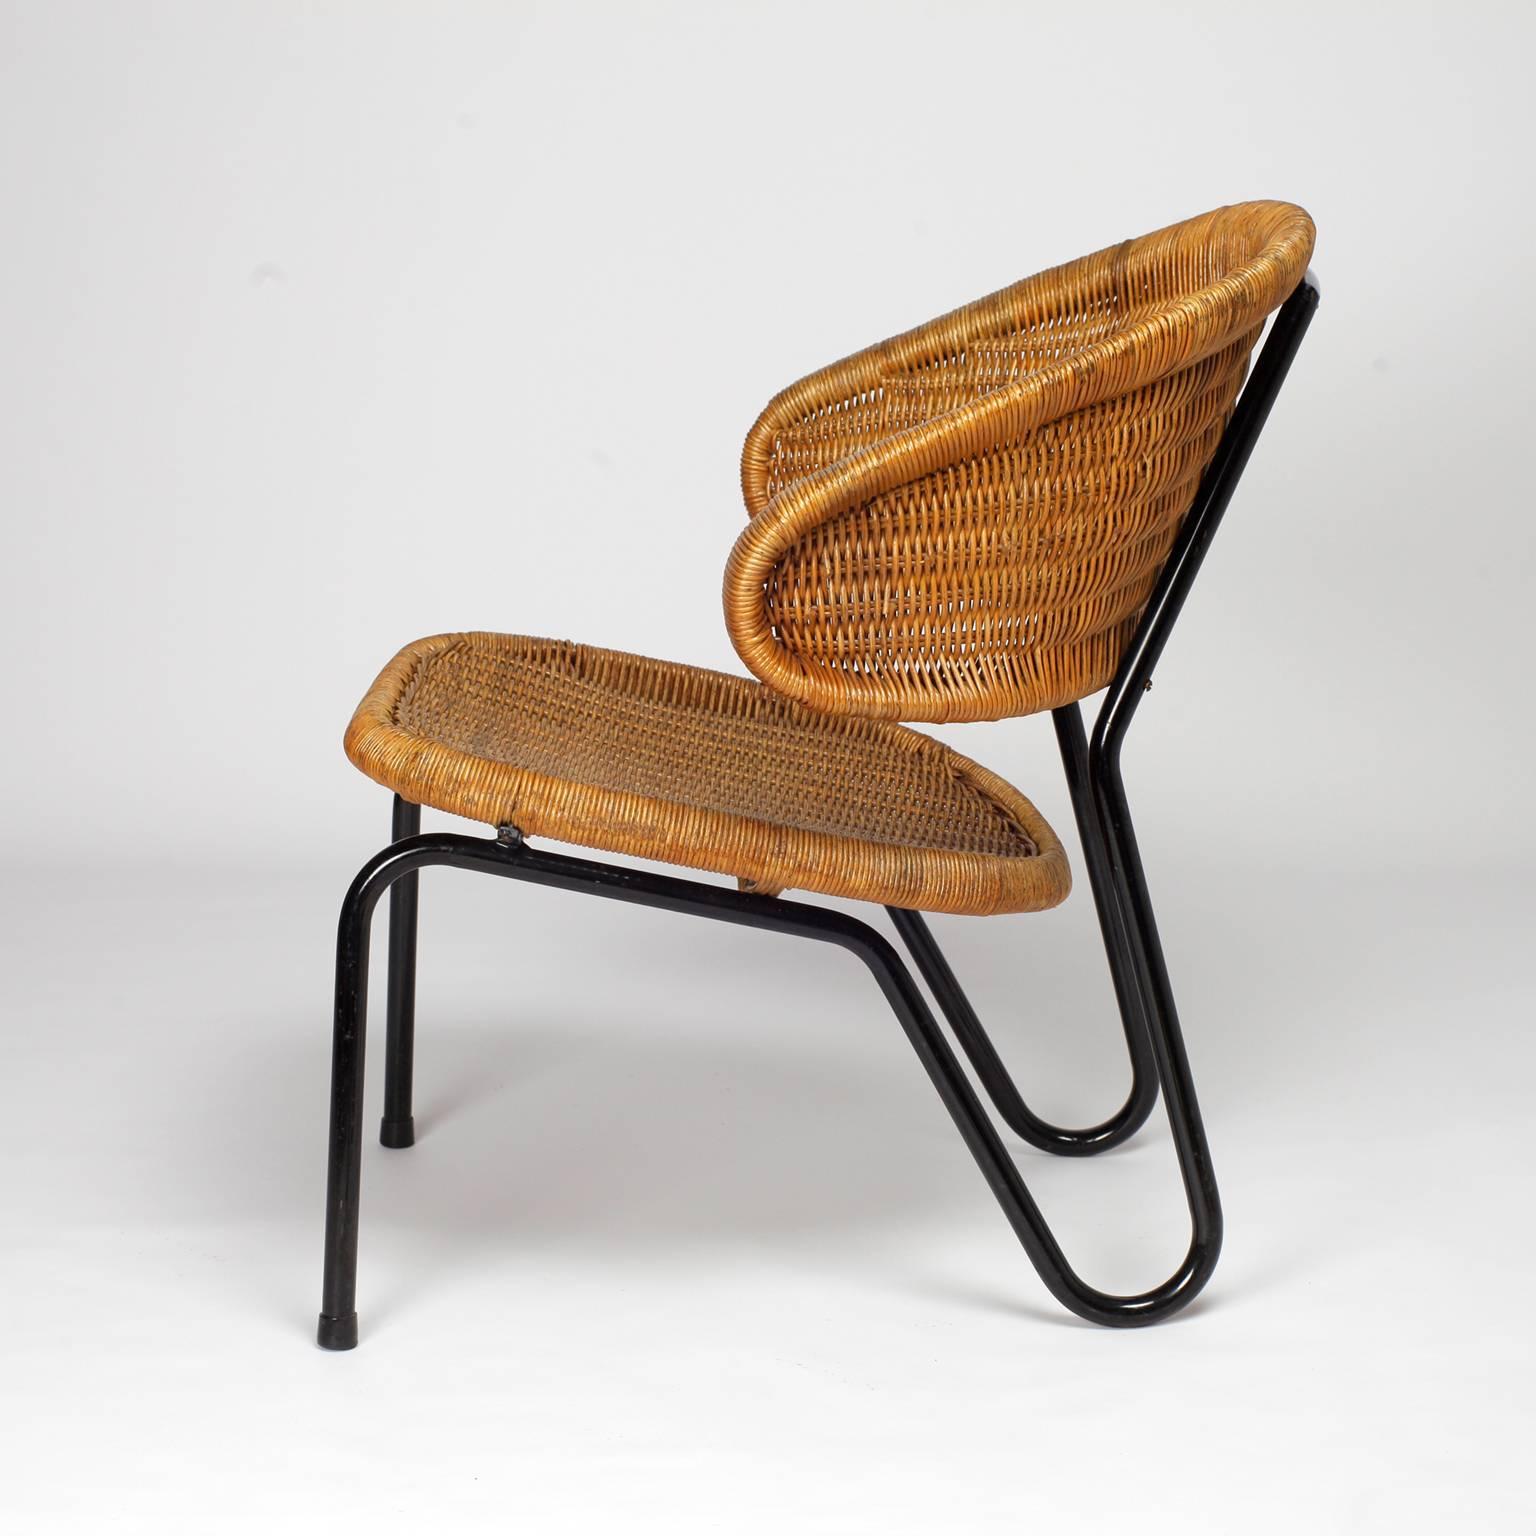 Mid-20th Century Dirk Van Sliedregt Rattan Easy Chair 568 for Gebr Jonkers, 1954 Netherlands